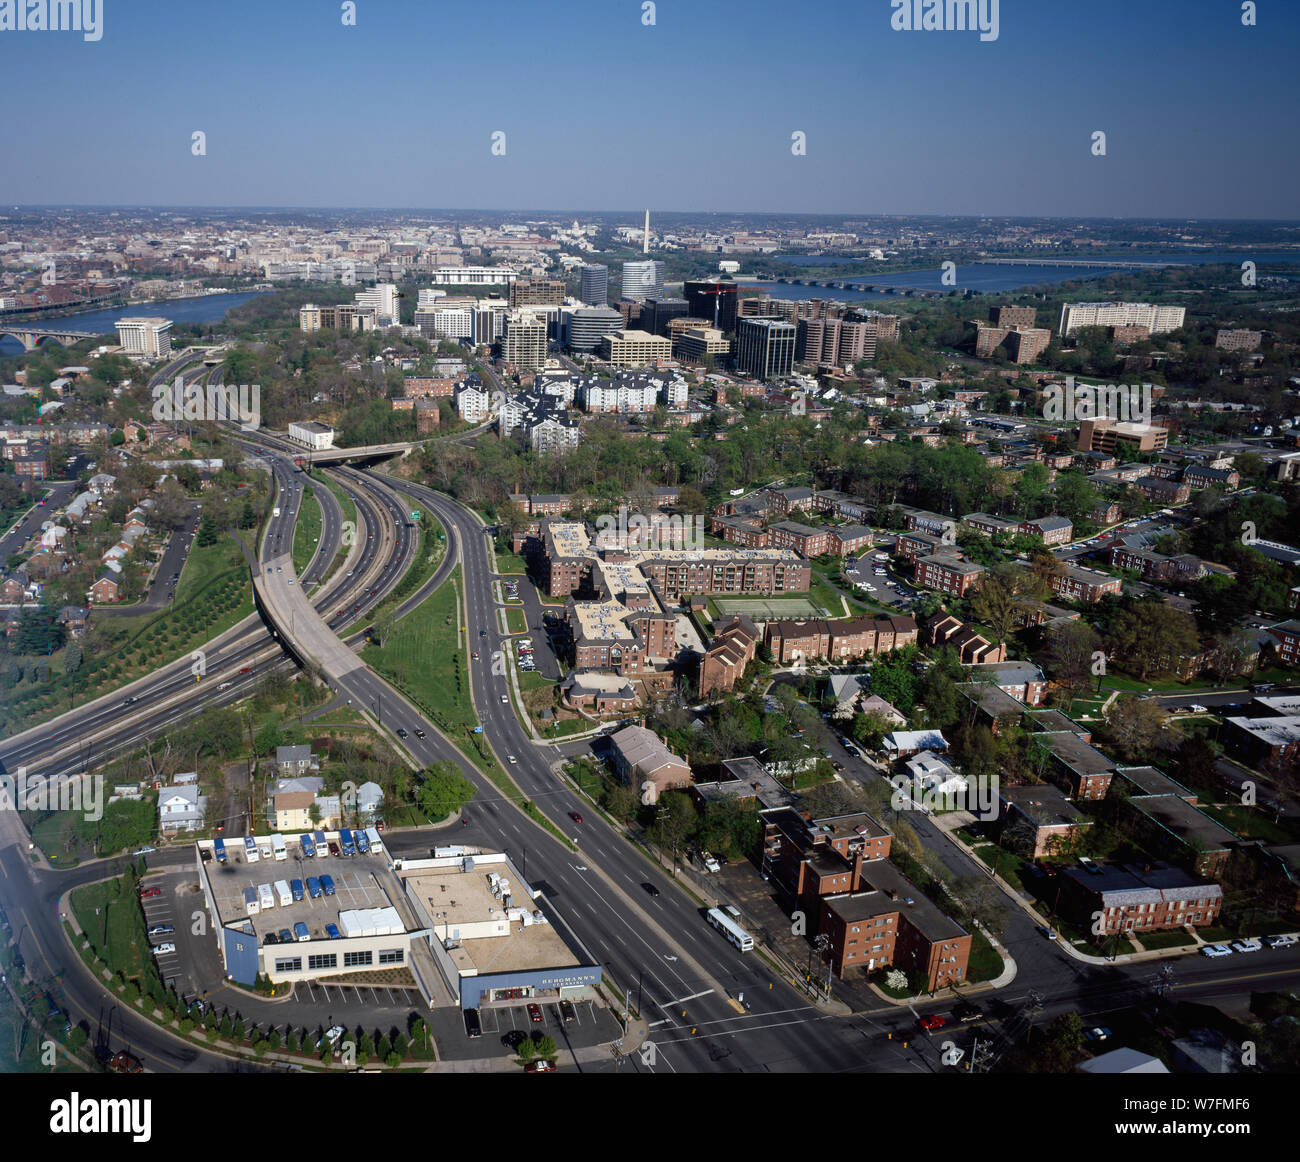 Aerial view of Arlington, Virginia Stock Photo